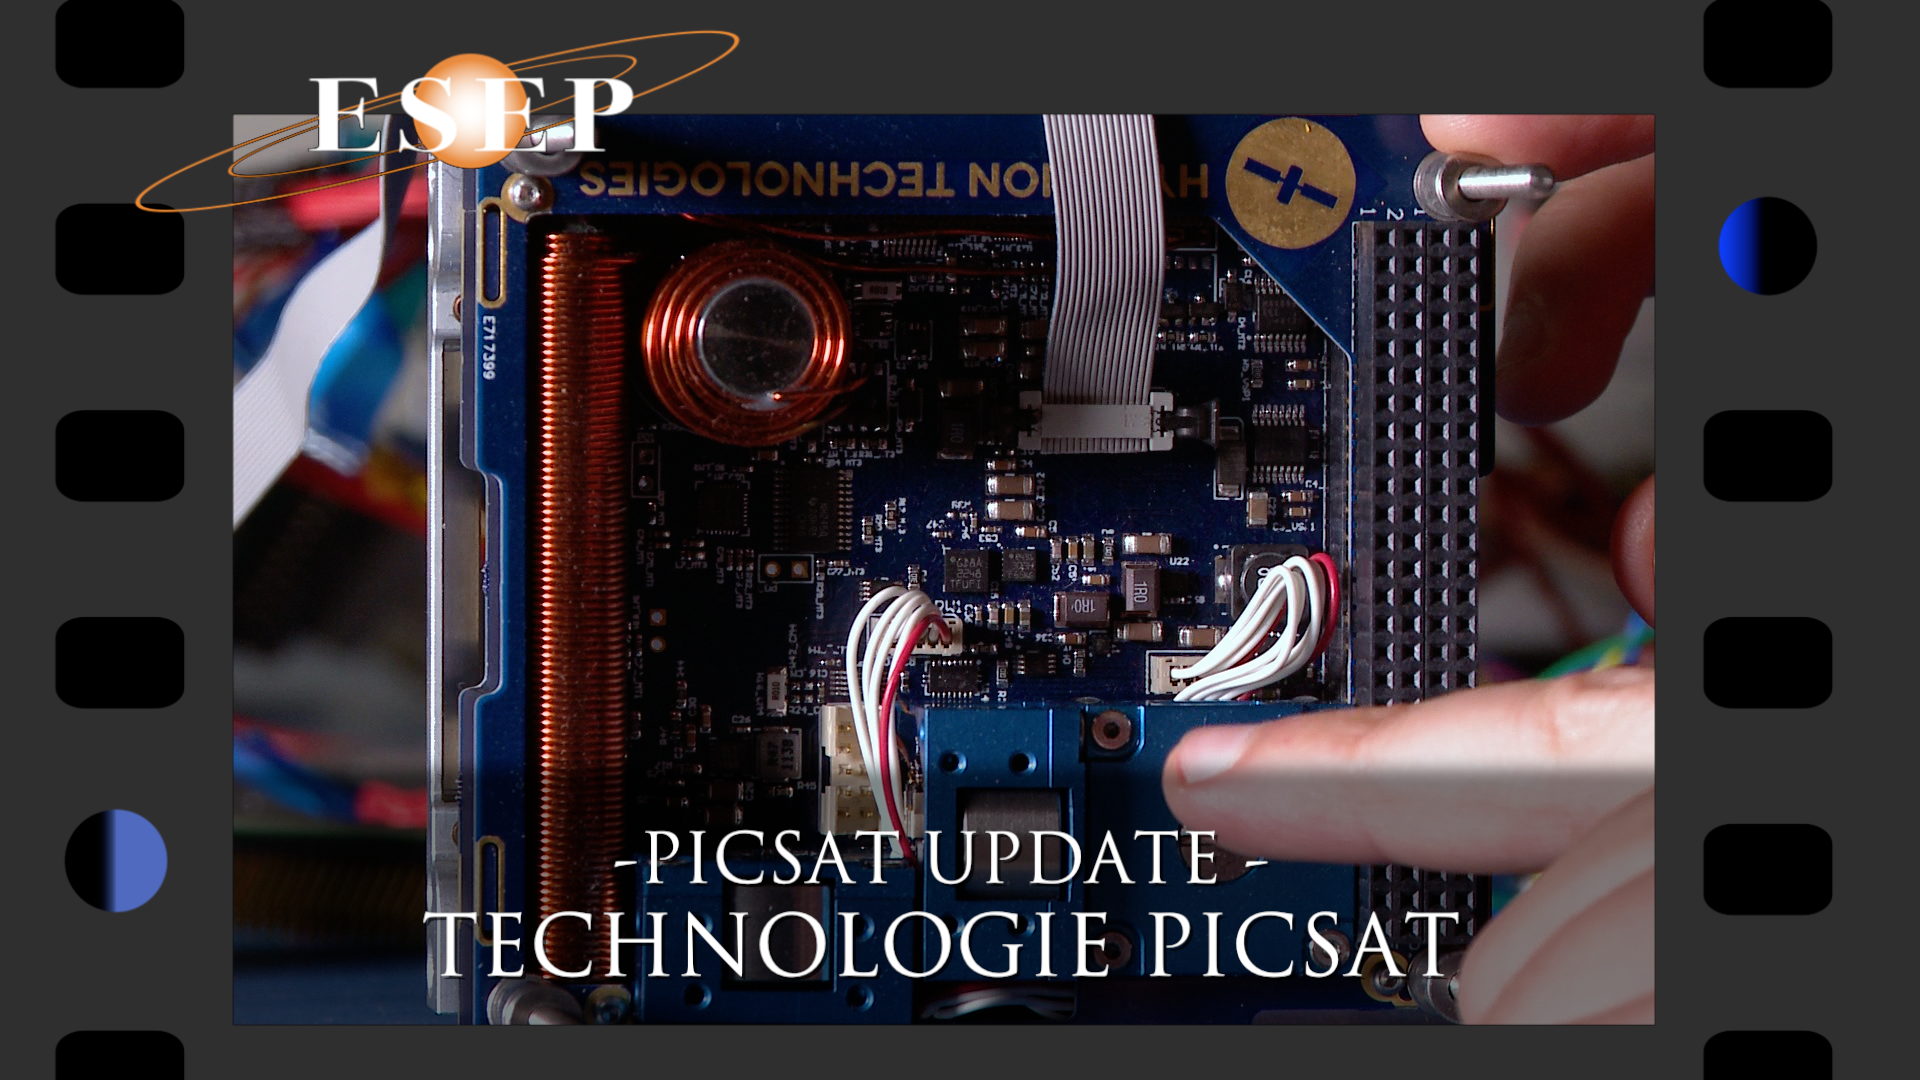 PICSAT update - 20 Octobre 2017: Technologie PICSAT